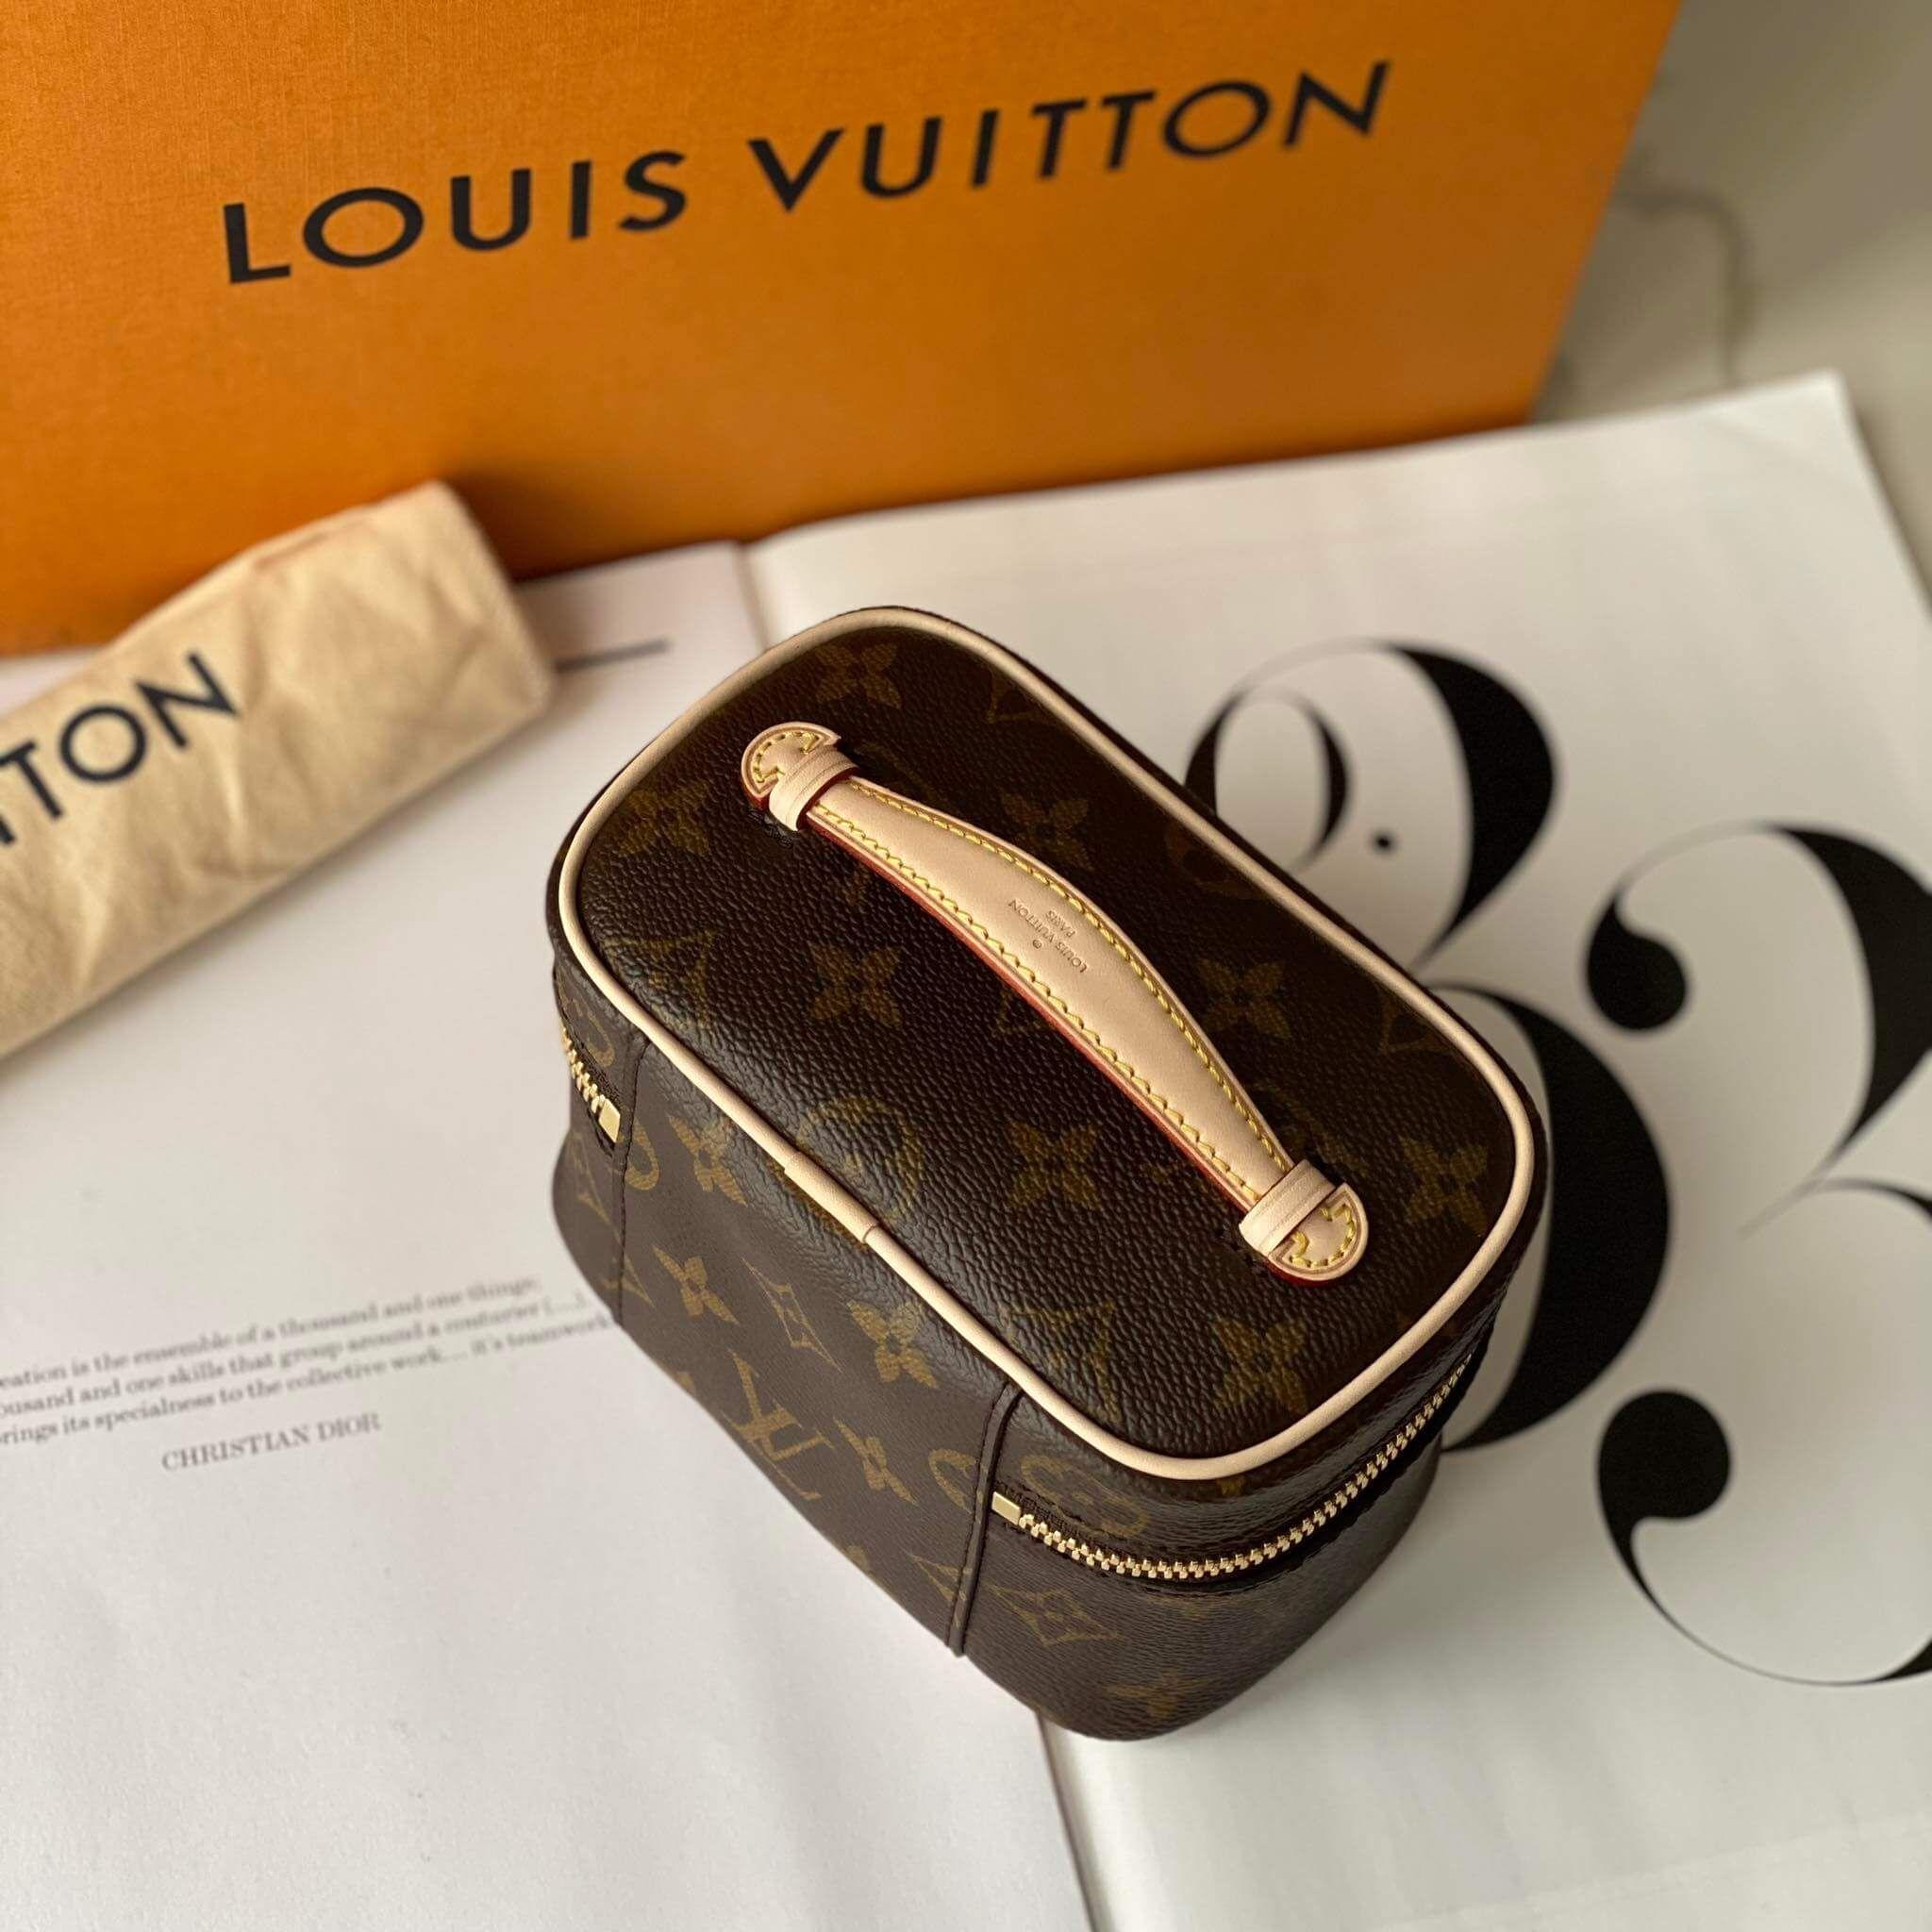 Bonus 3  New Nice  NICE NANO Louis Vuitton Unboxing reveal  CHIẾC TÚI TÍ  HON ĐẦU TIÊN CỦA MÌNH  YouTube